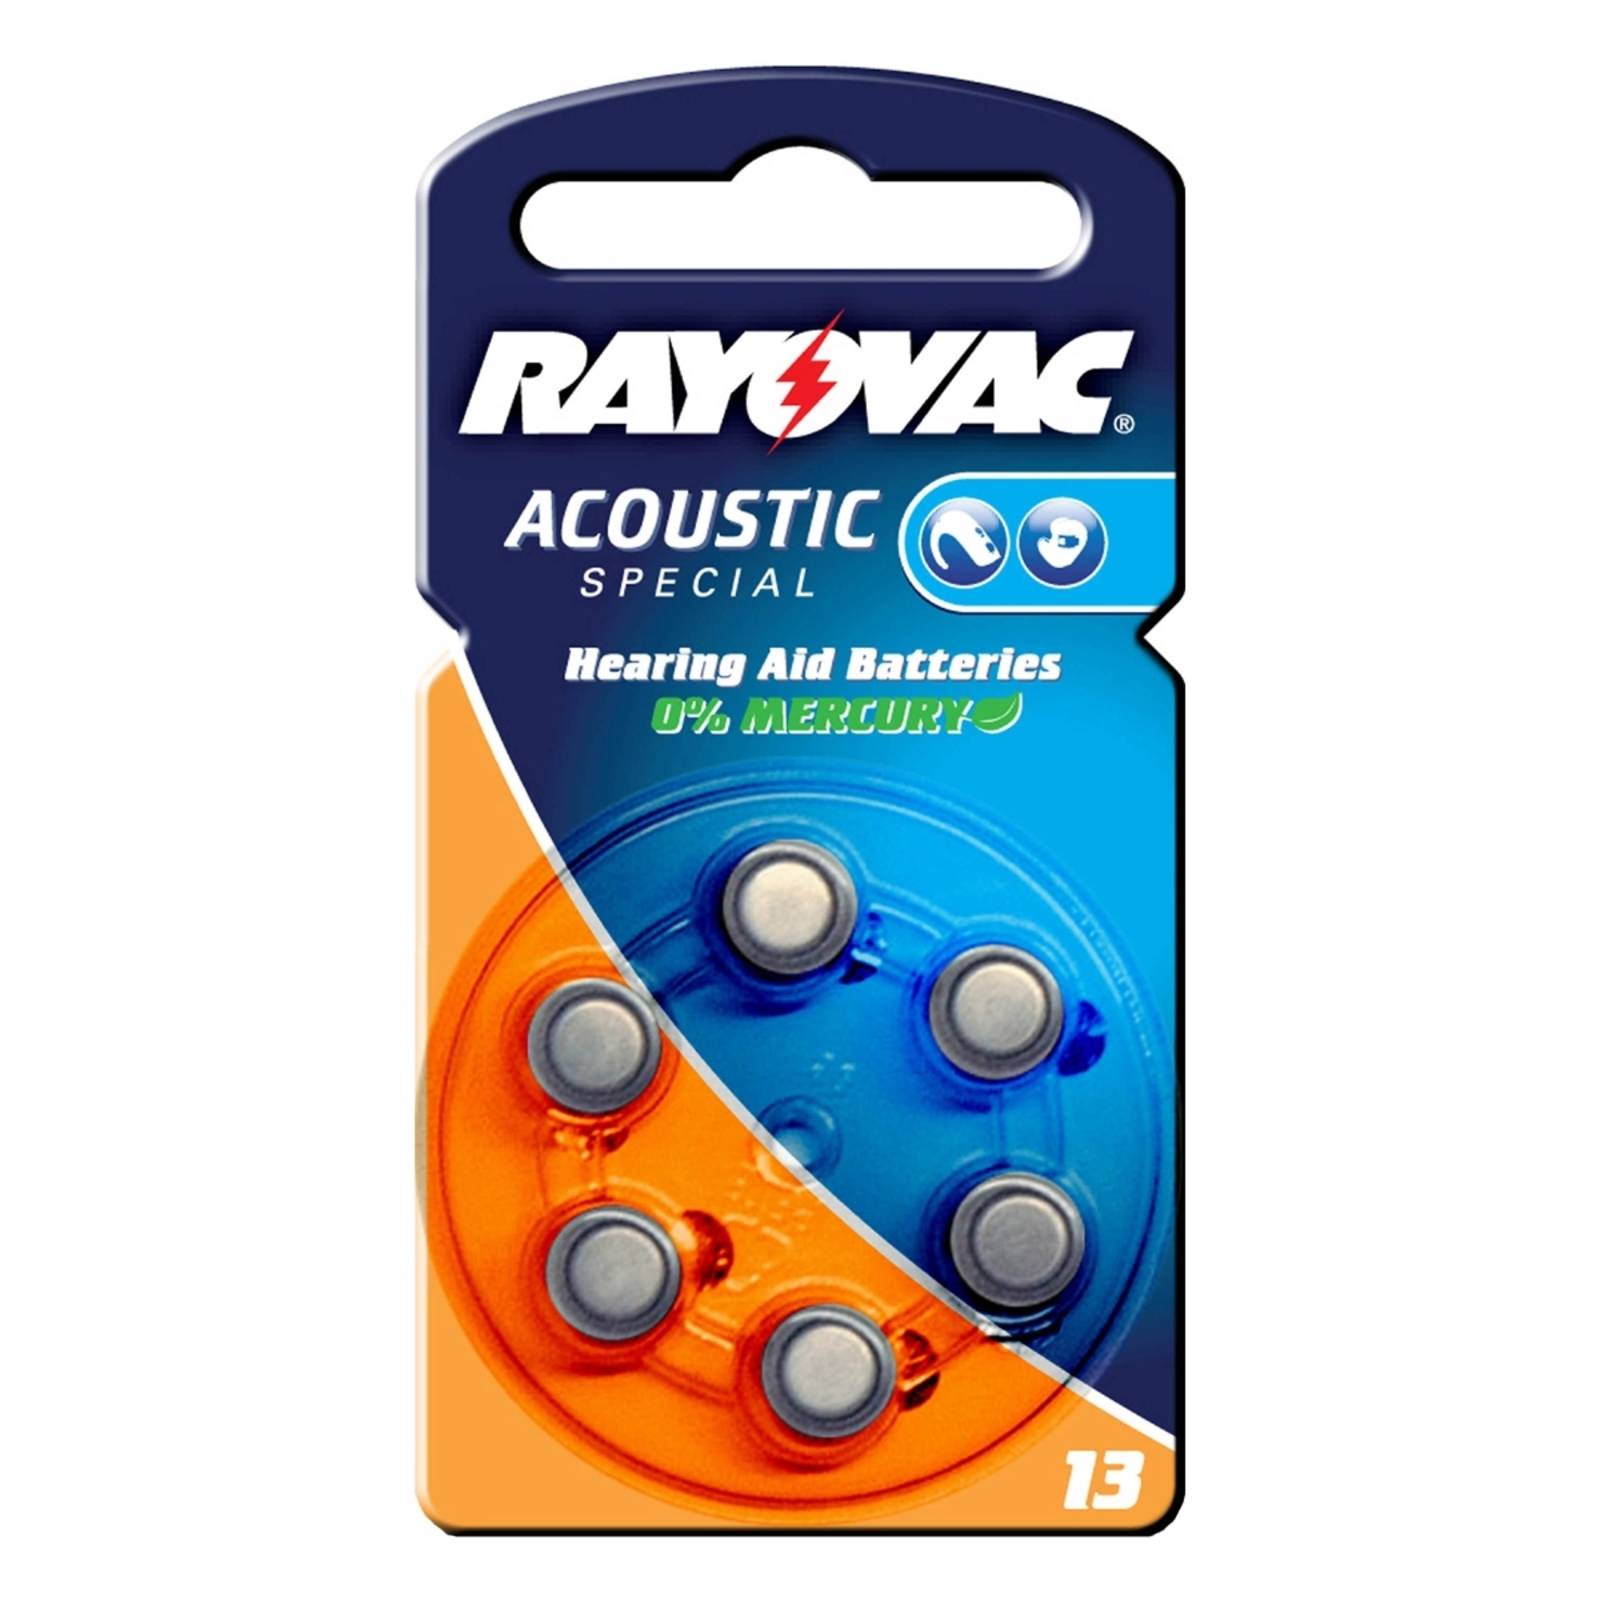 Acoustic 1,4 V 310m/Ah nappiparisto Rayovac 13